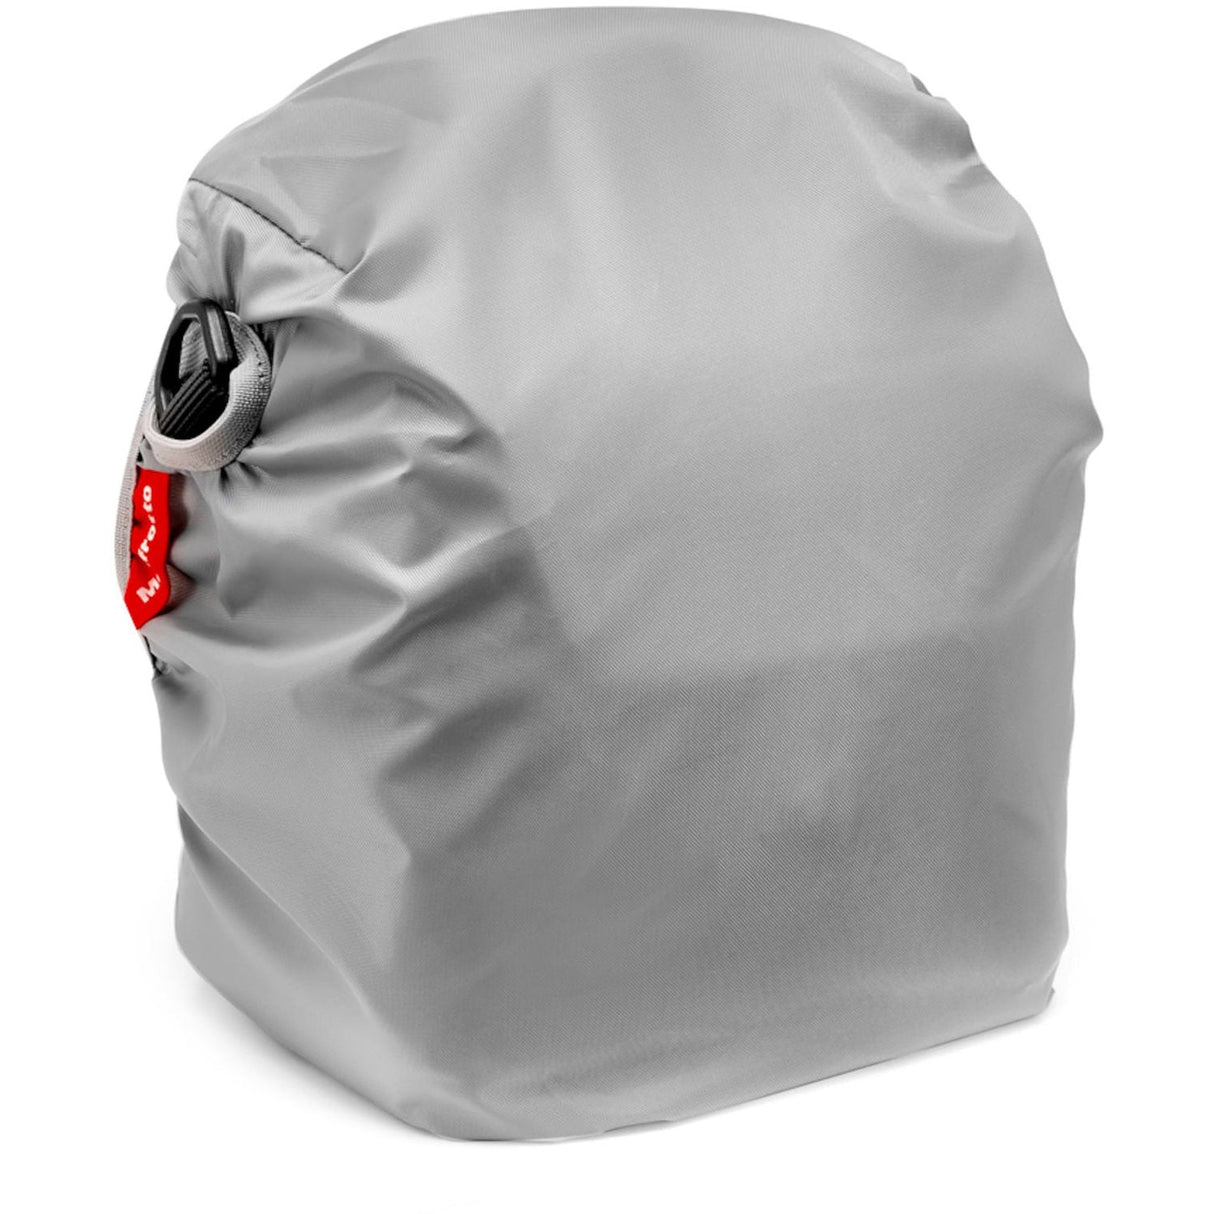 Manfrotto Active Shoulder Bag 3 (Black)